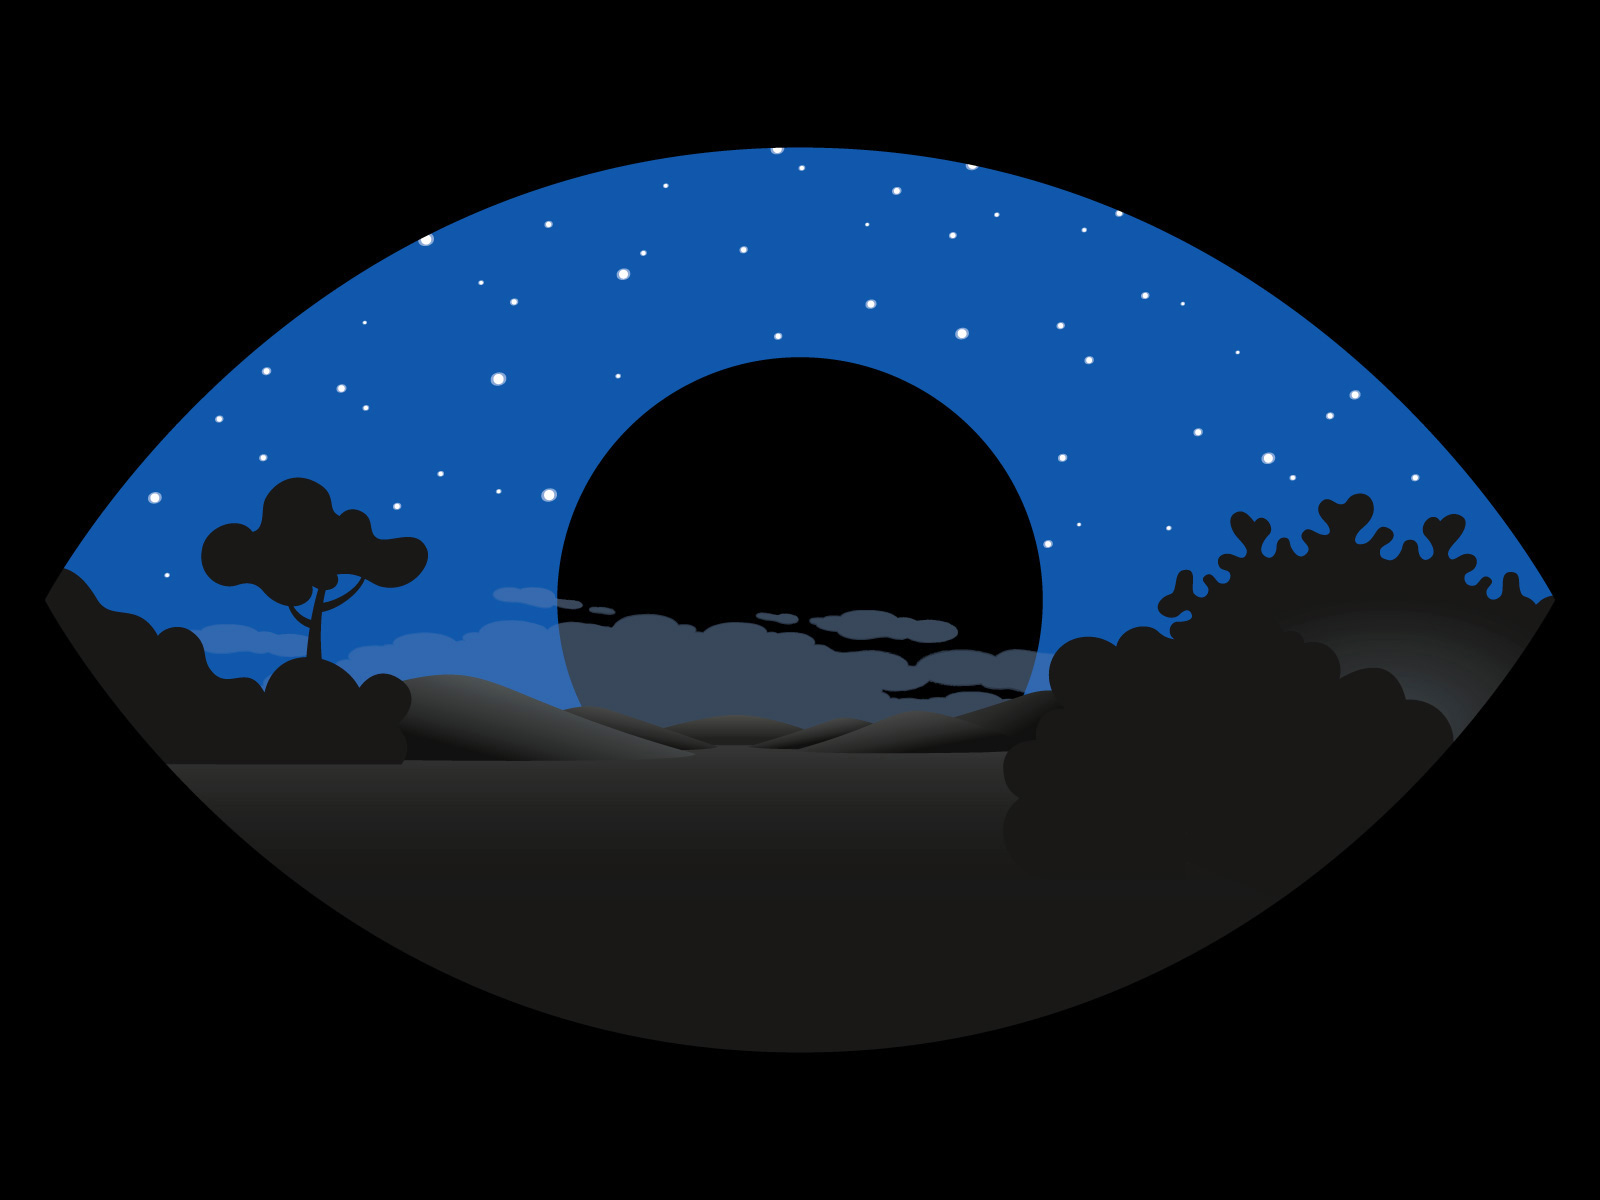 Insomnia black moon eye